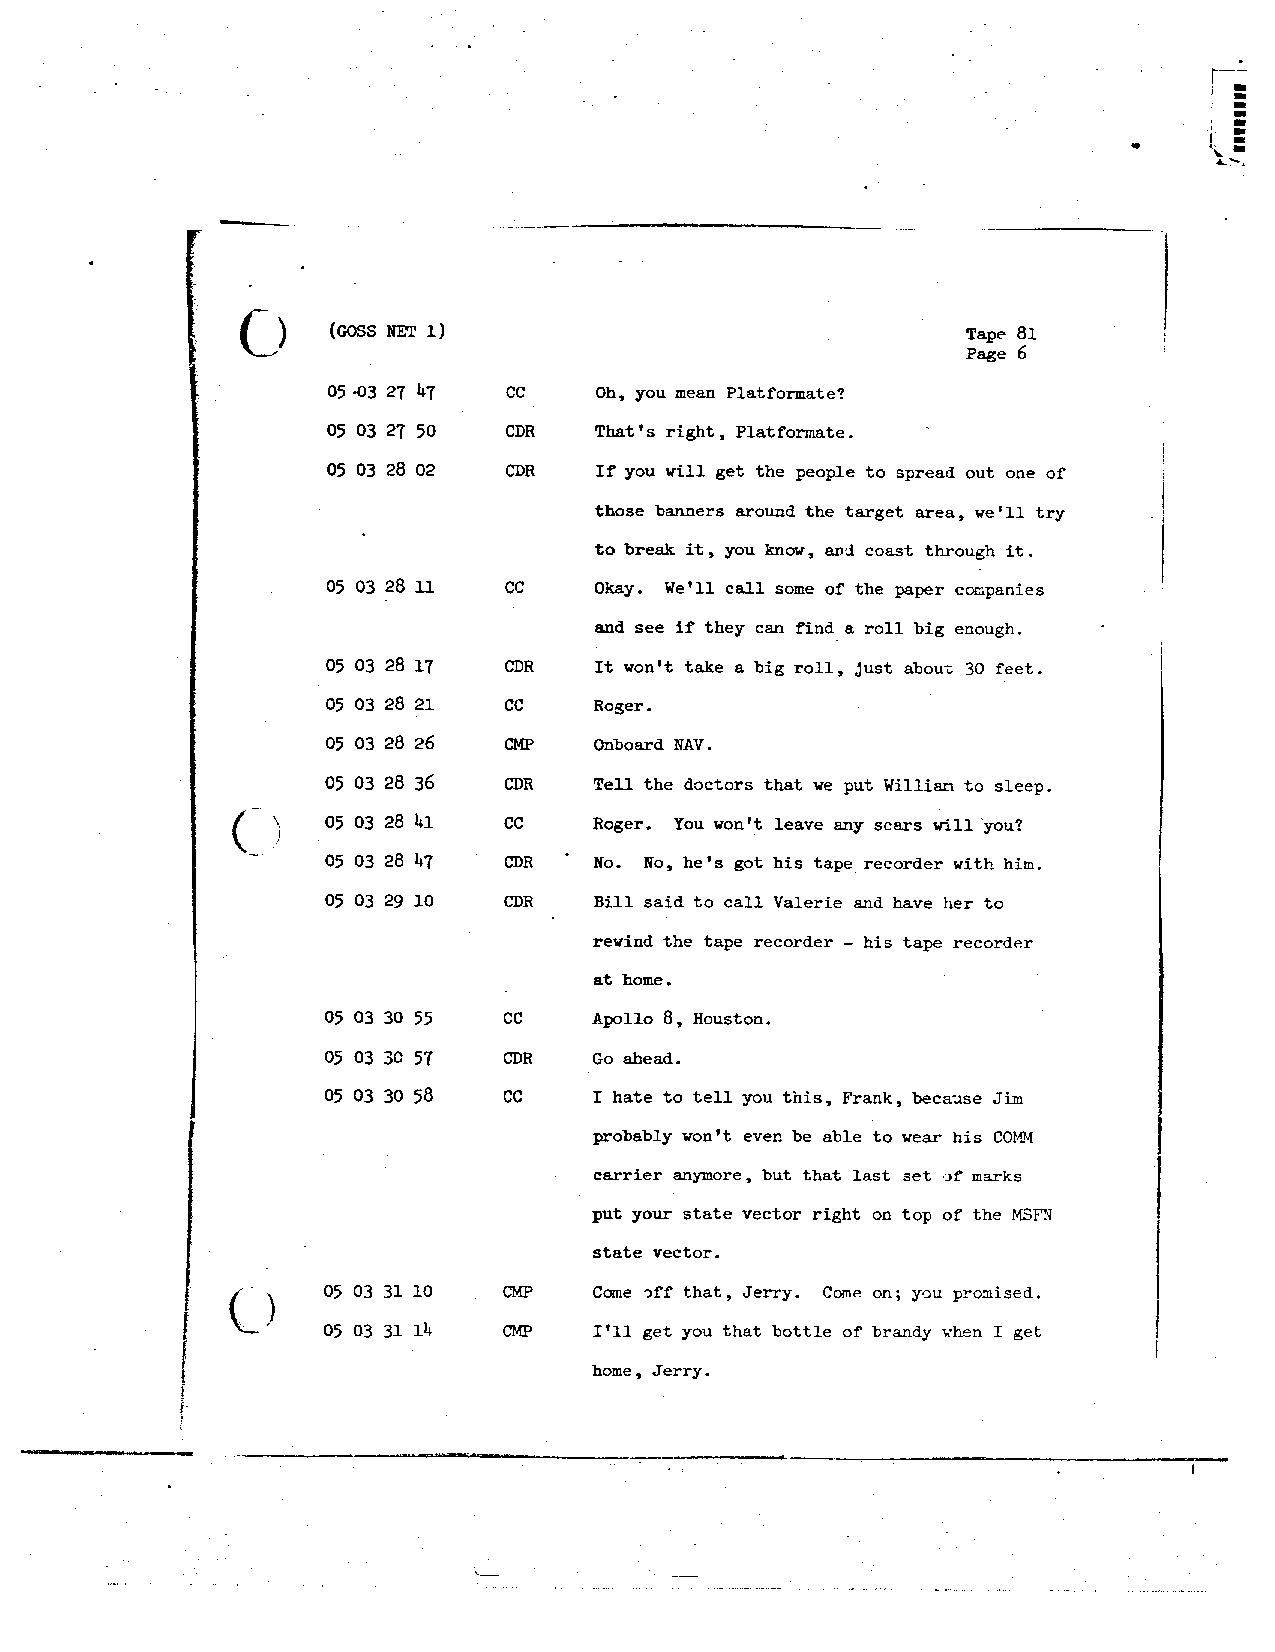 Page 674 of Apollo 8’s original transcript